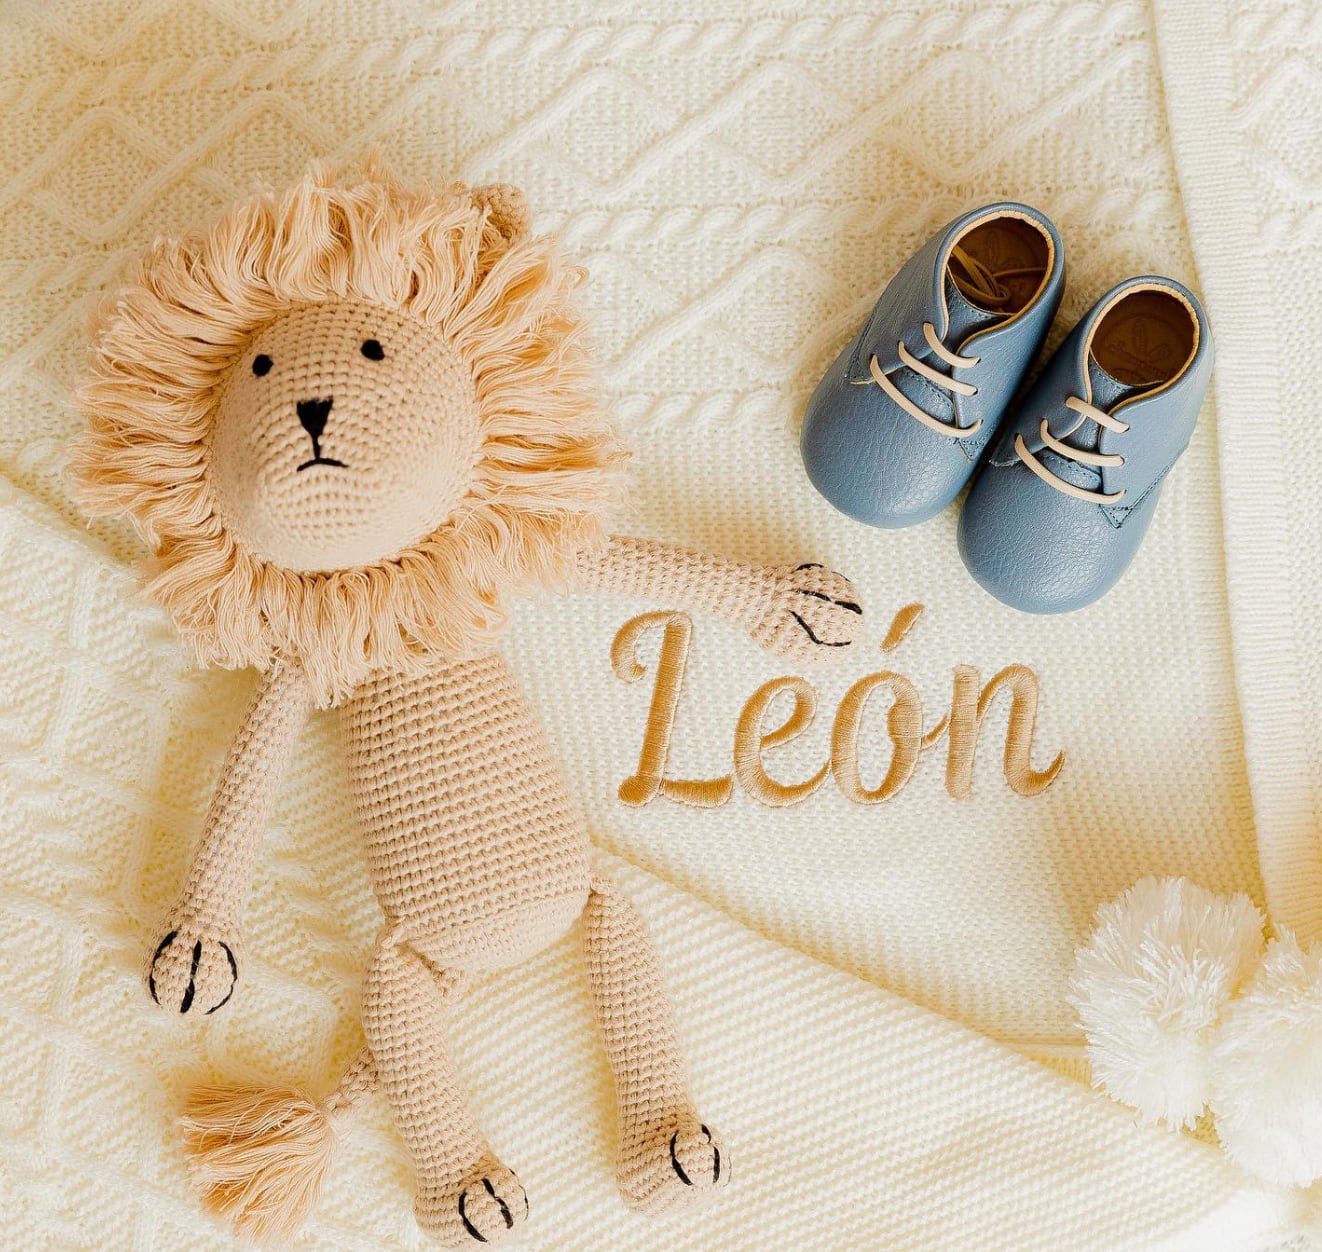 La noticia del bebé, que se llamará 'León' generó cientos de reacciones. 